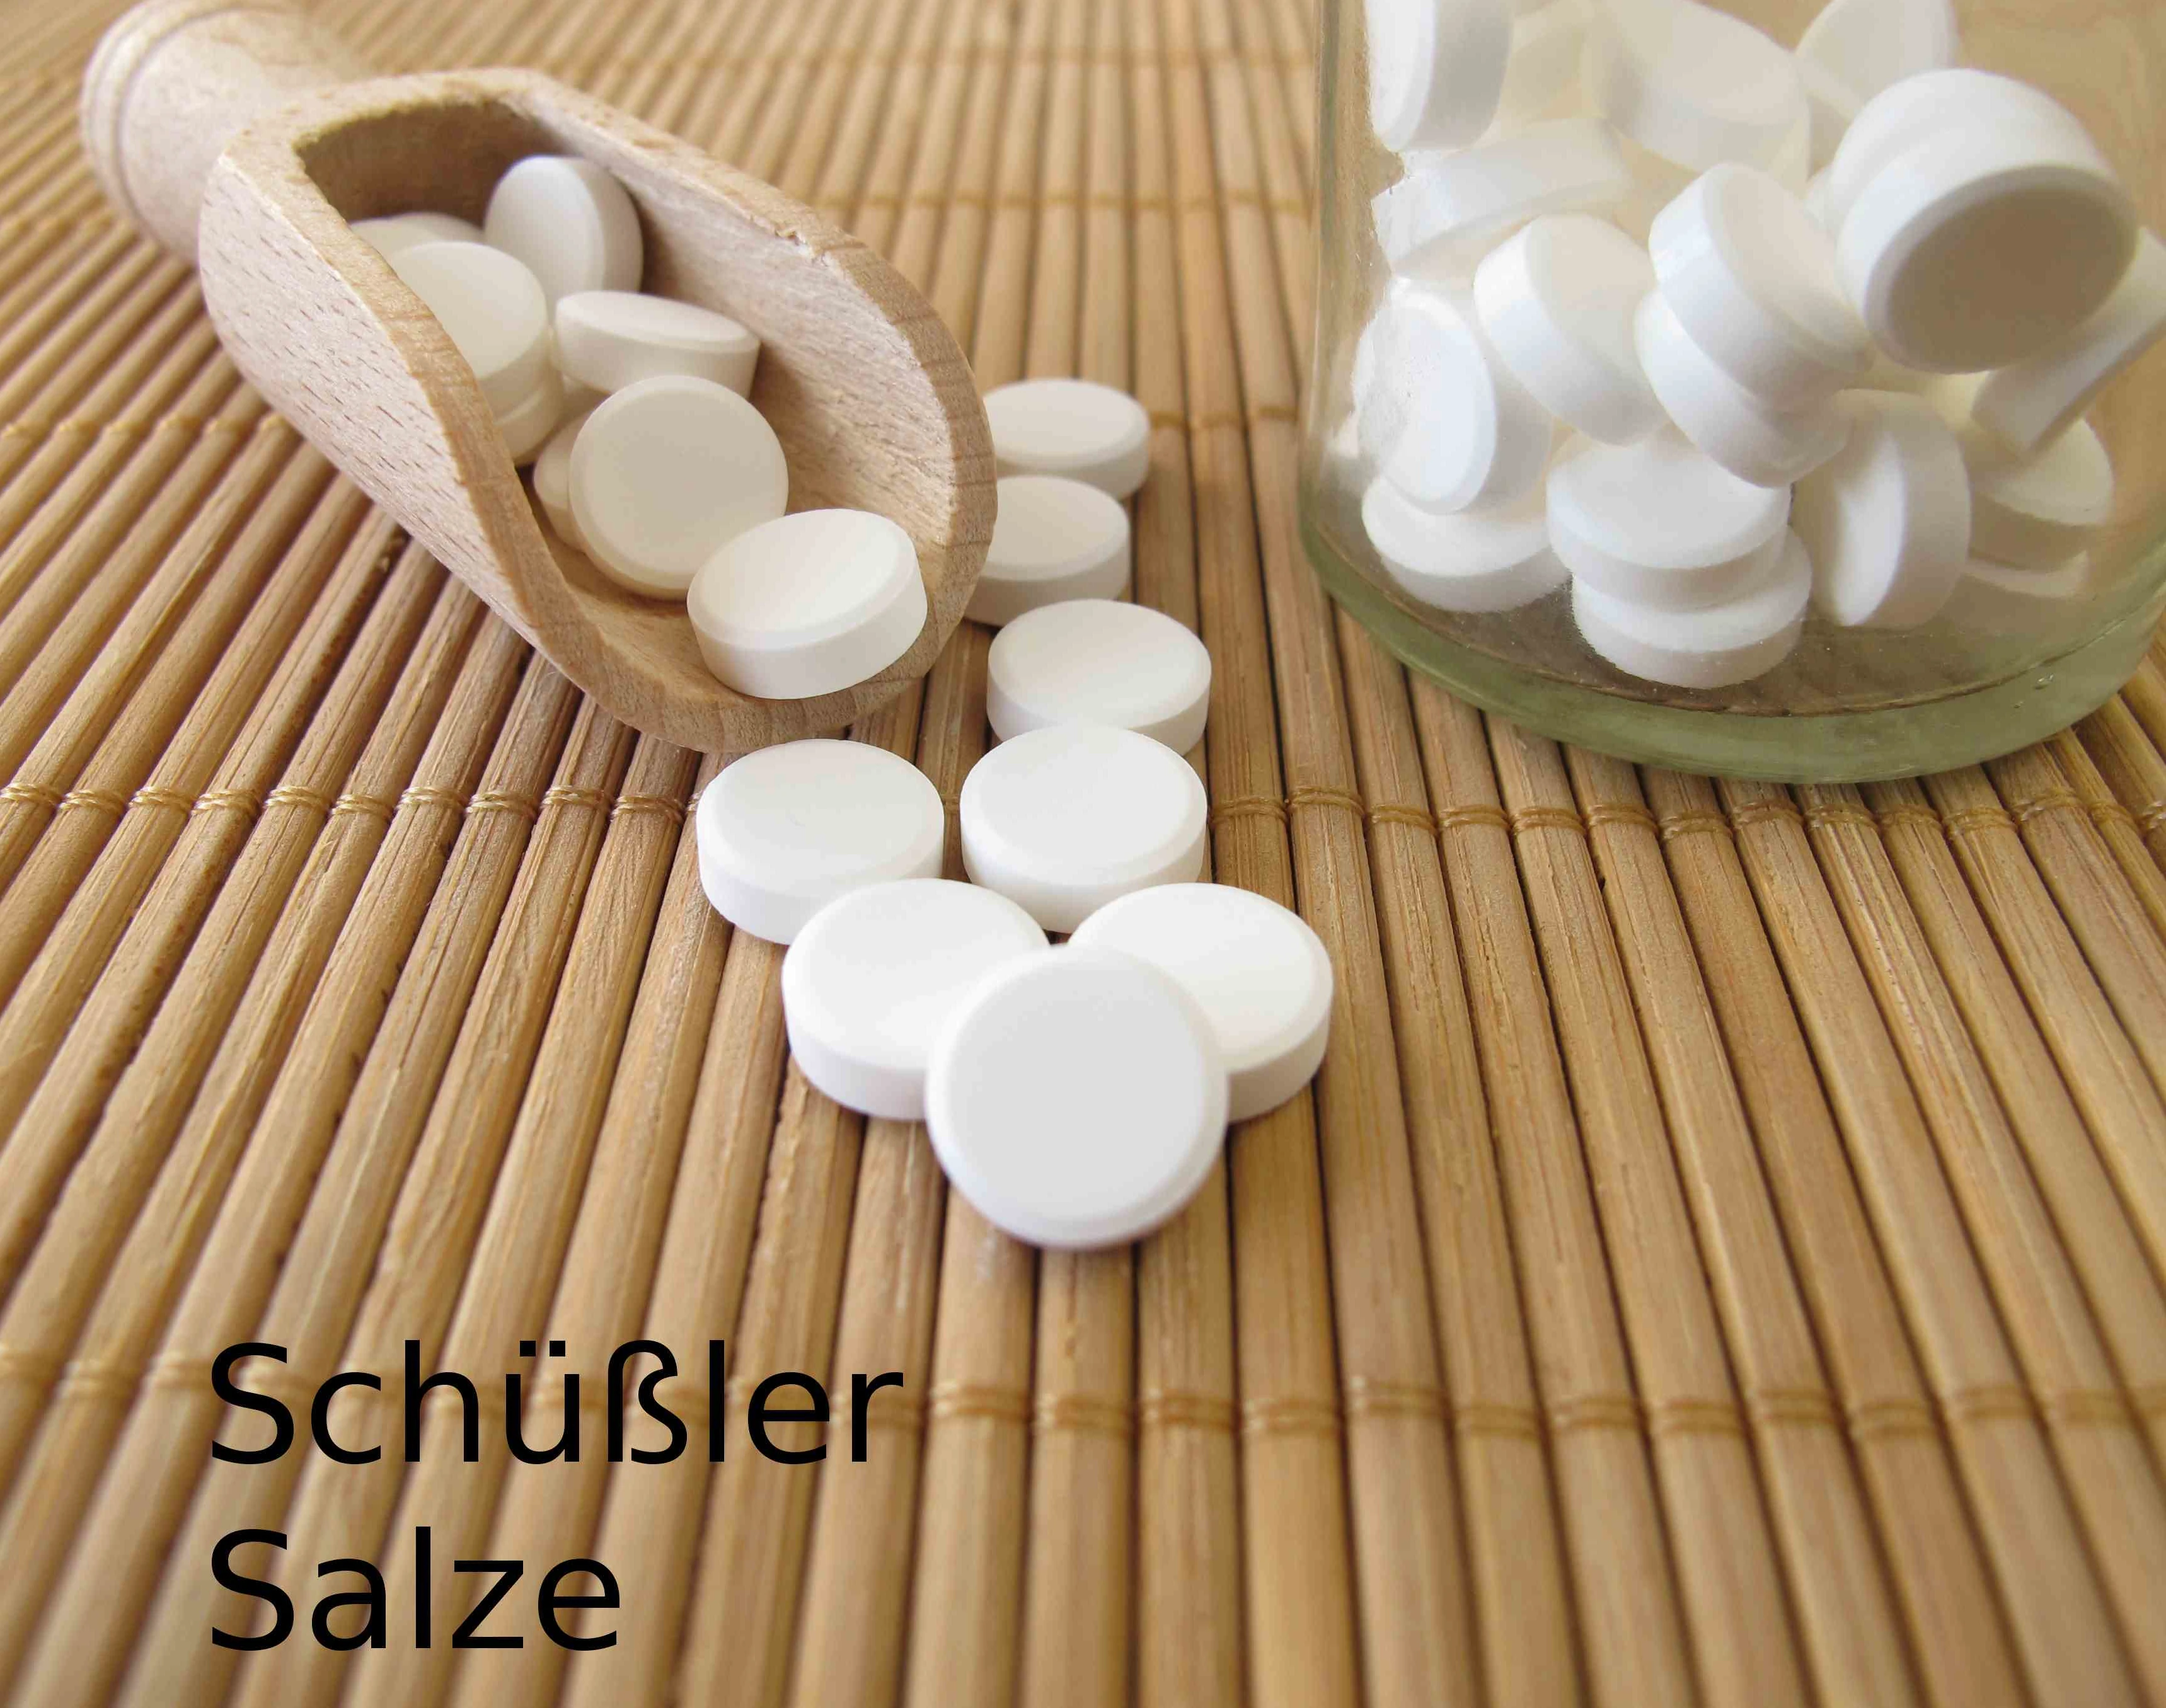 Schüsslersalze in Form von weißen Pillen auf einem Holzlöffen und in einem klaren Glas auf einer Bambusmatte